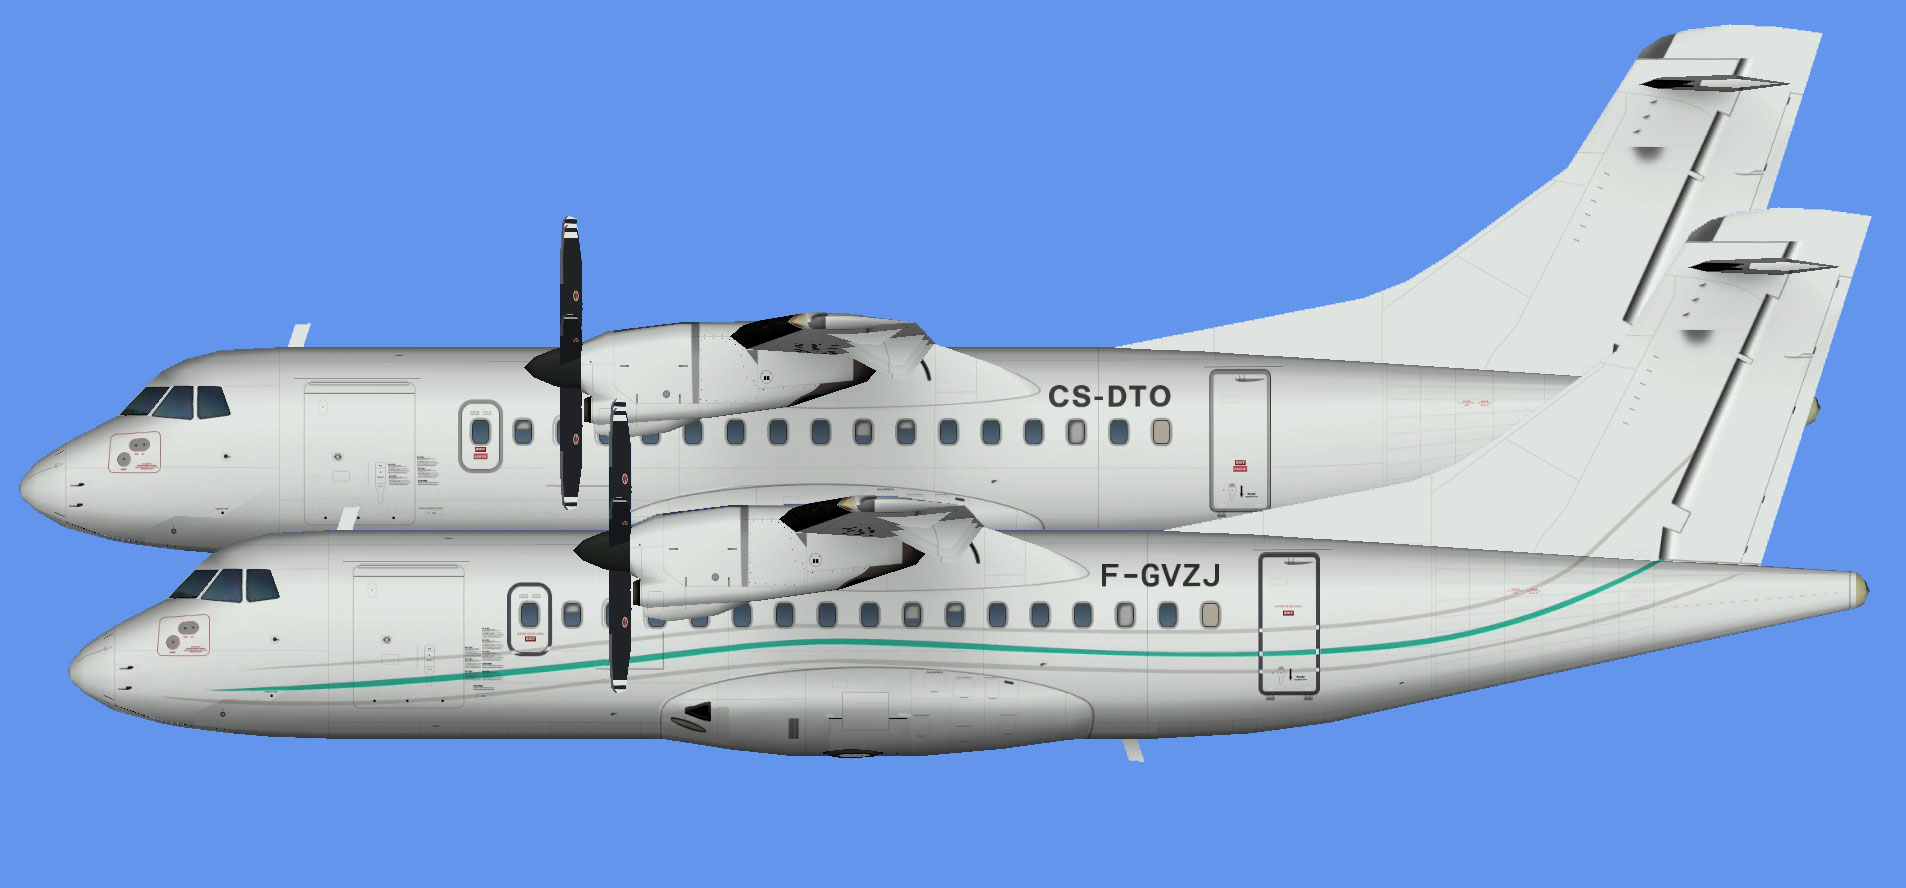 Hop! ATR 42 leases